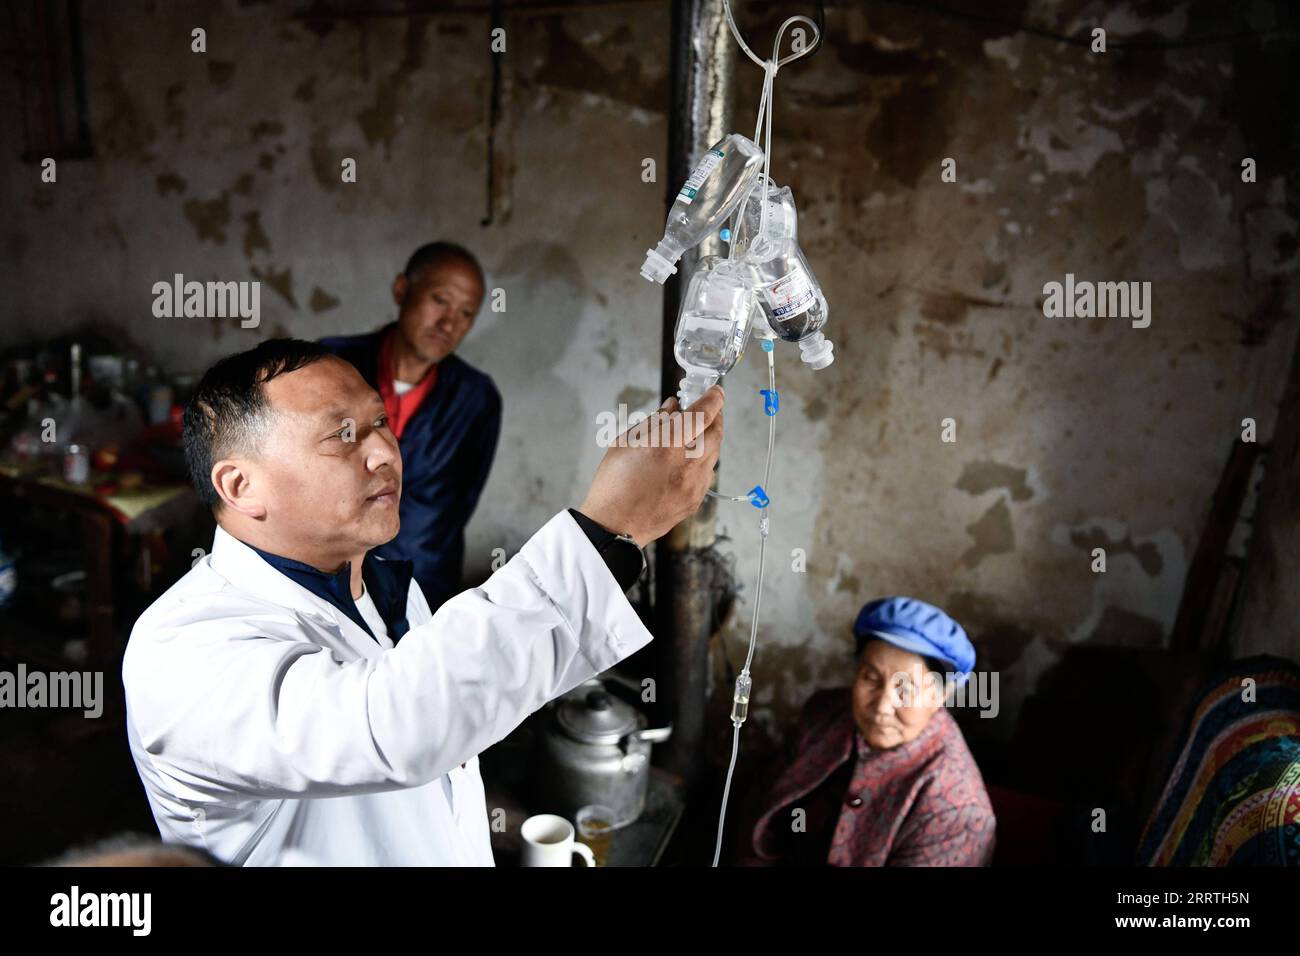 230726 -- GUIYANG, le 26 juillet 2023 -- Zhu Daqing administre un goutte-à-goutte intraveineux à un patient âgé à la maison du patient dans le village de Xinshui, ville de Mazha du comté autonome de Weining de Yi-hui-Miao, dans la province du Guizhou du sud-ouest de la Chine, le 19 juillet 2023. Zhu Daqing est médecin rural dans le village de Xinshui, dans la ville de Mazha du comté autonome de Yi-hui-Miao de Weining. Né dans une famille avec des générations de médecins, Zhu Daqing a été déterminé à être un médecin comme son père à un jeune âge, même s'il est handicapé dans son avant-bras gauche en raison de l'absence congénitale du membre supérieur. Spécialisé dans les médicis chinois traditionnels Banque D'Images